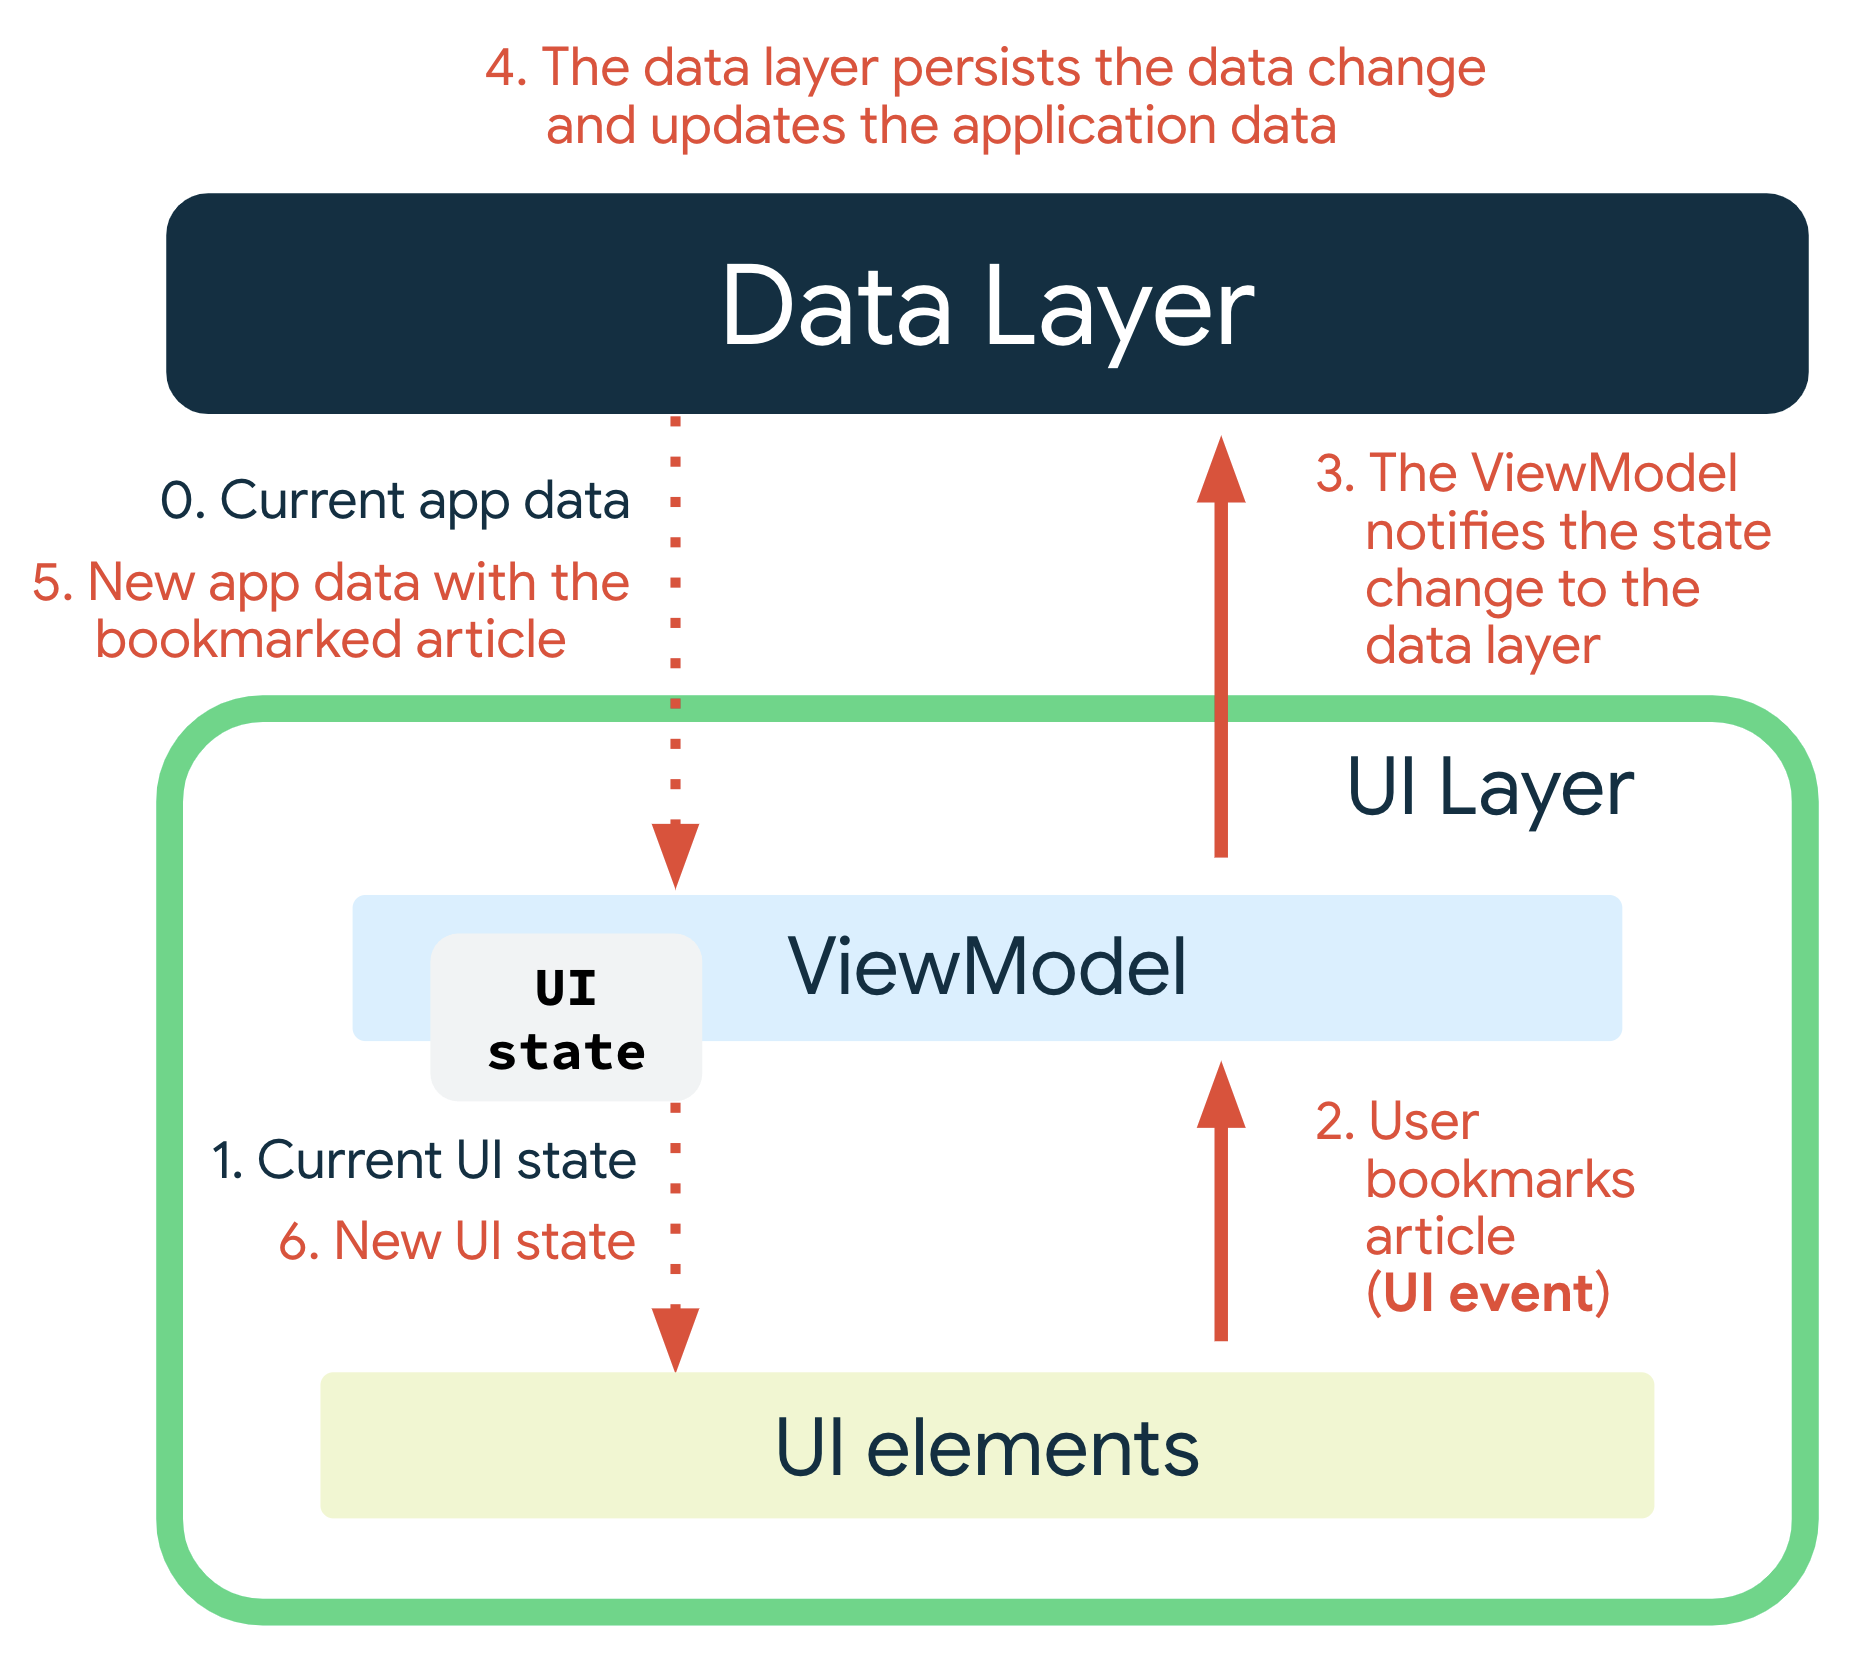 ユーザーが記事をブックマークすると、UI イベントが発生します。ViewModel が状態の変化をデータレイヤに通知します。データレイヤがデータの変更を保持し、アプリデータを更新します。ブックマークされた記事の新しいアプリデータが ViewModel に渡され、ViewModel が新しい UI 状態を生成して、表示するために UI 要素に渡します。